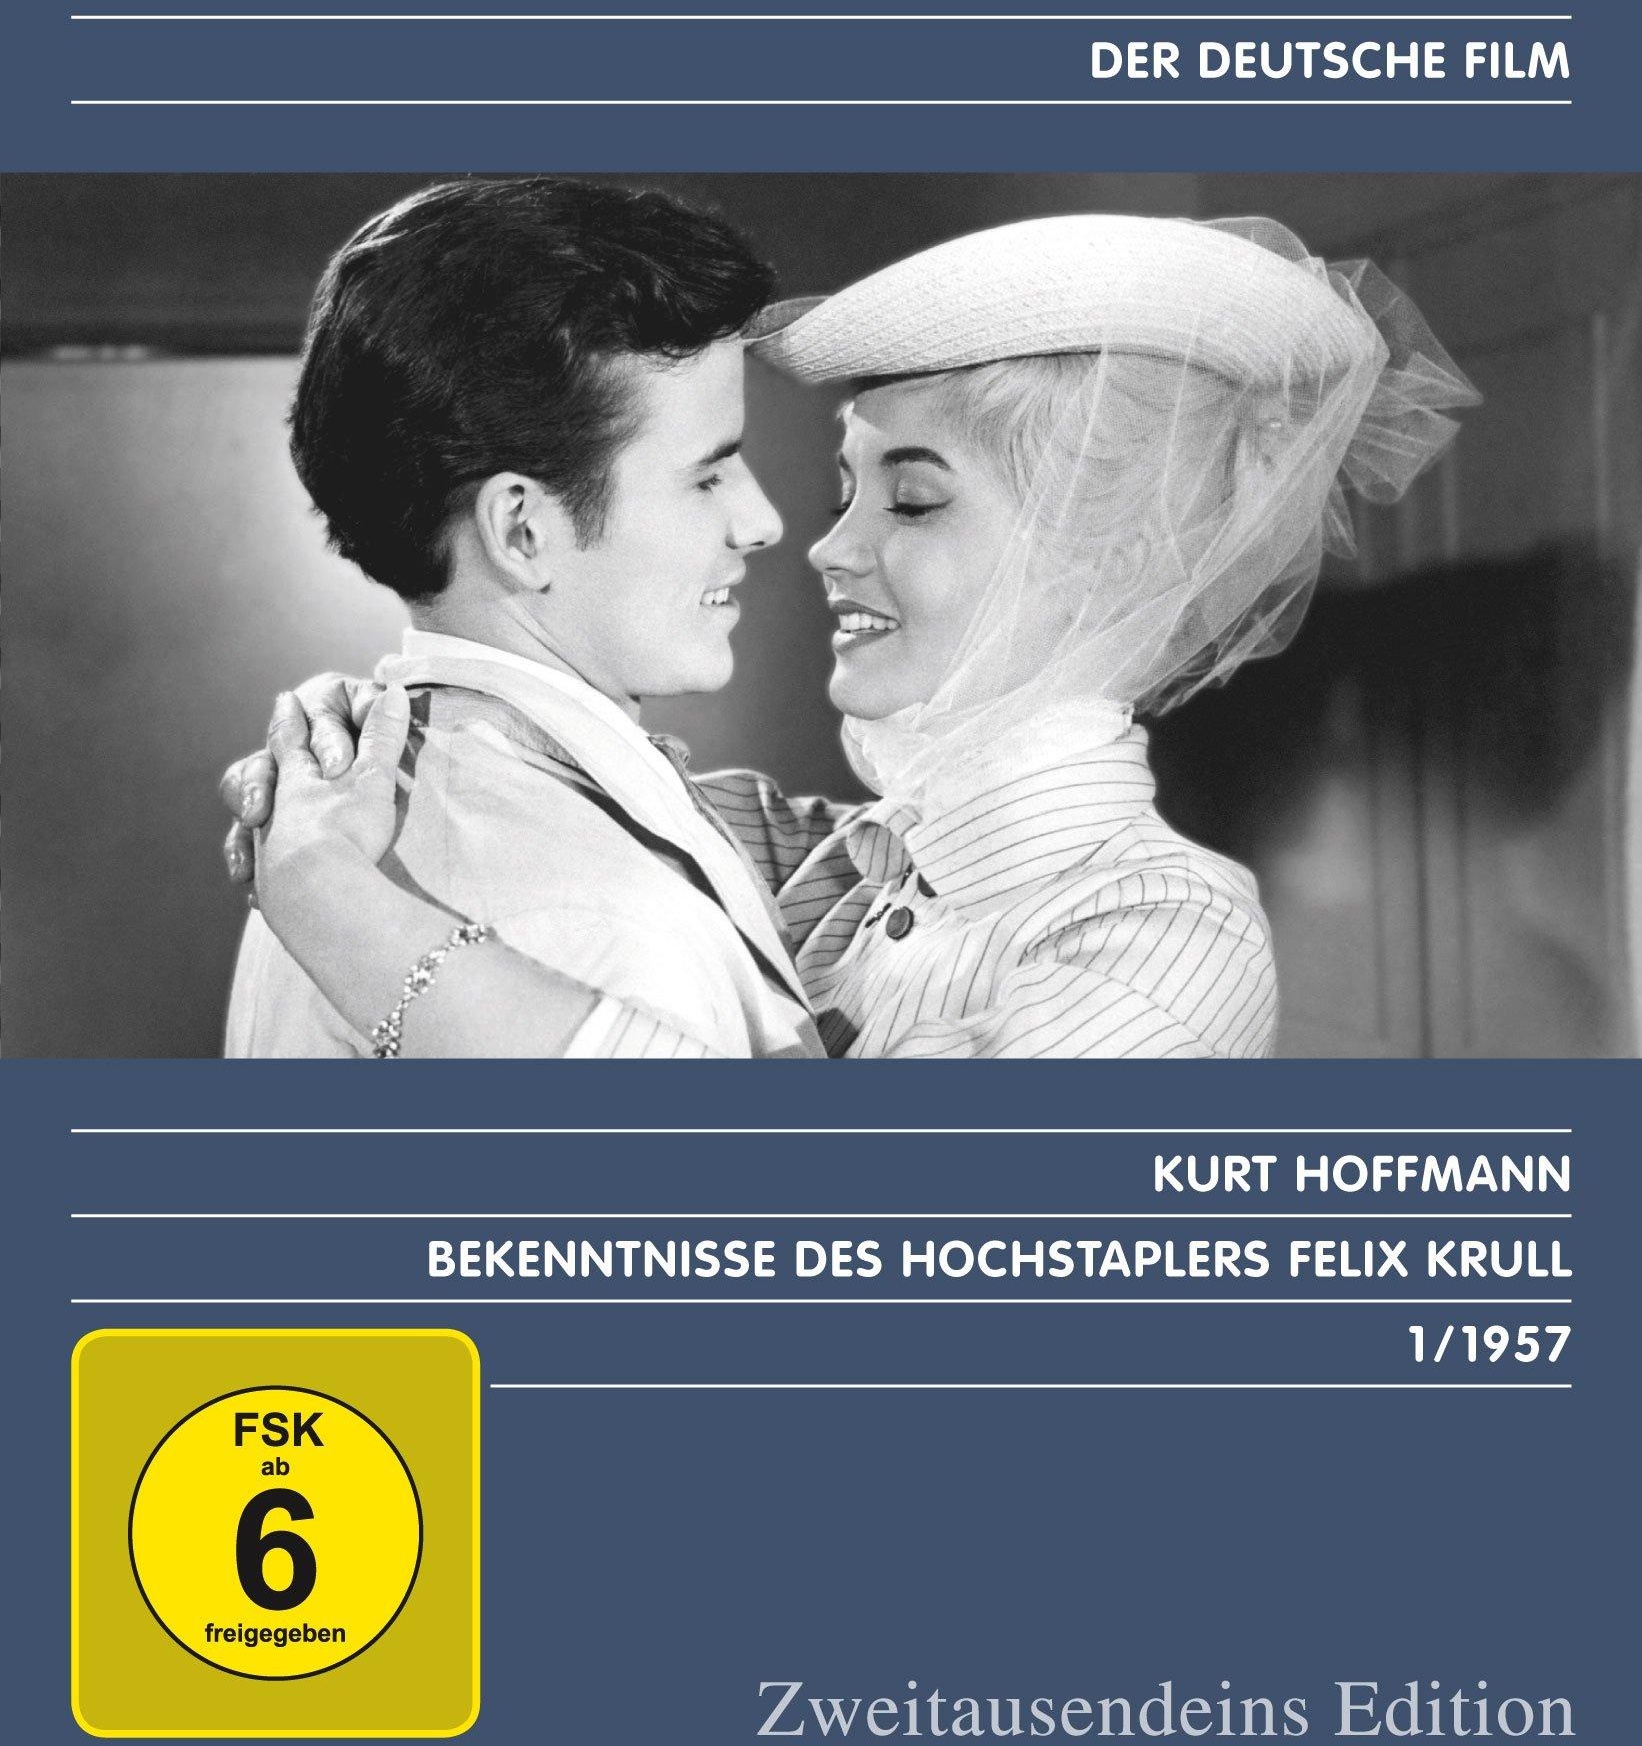 Bekenntnisse des Hochstaplers Felix Krull - Zweitausendeins Edition Deutscher Film 1/1957 (Neu differenzbesteuert)